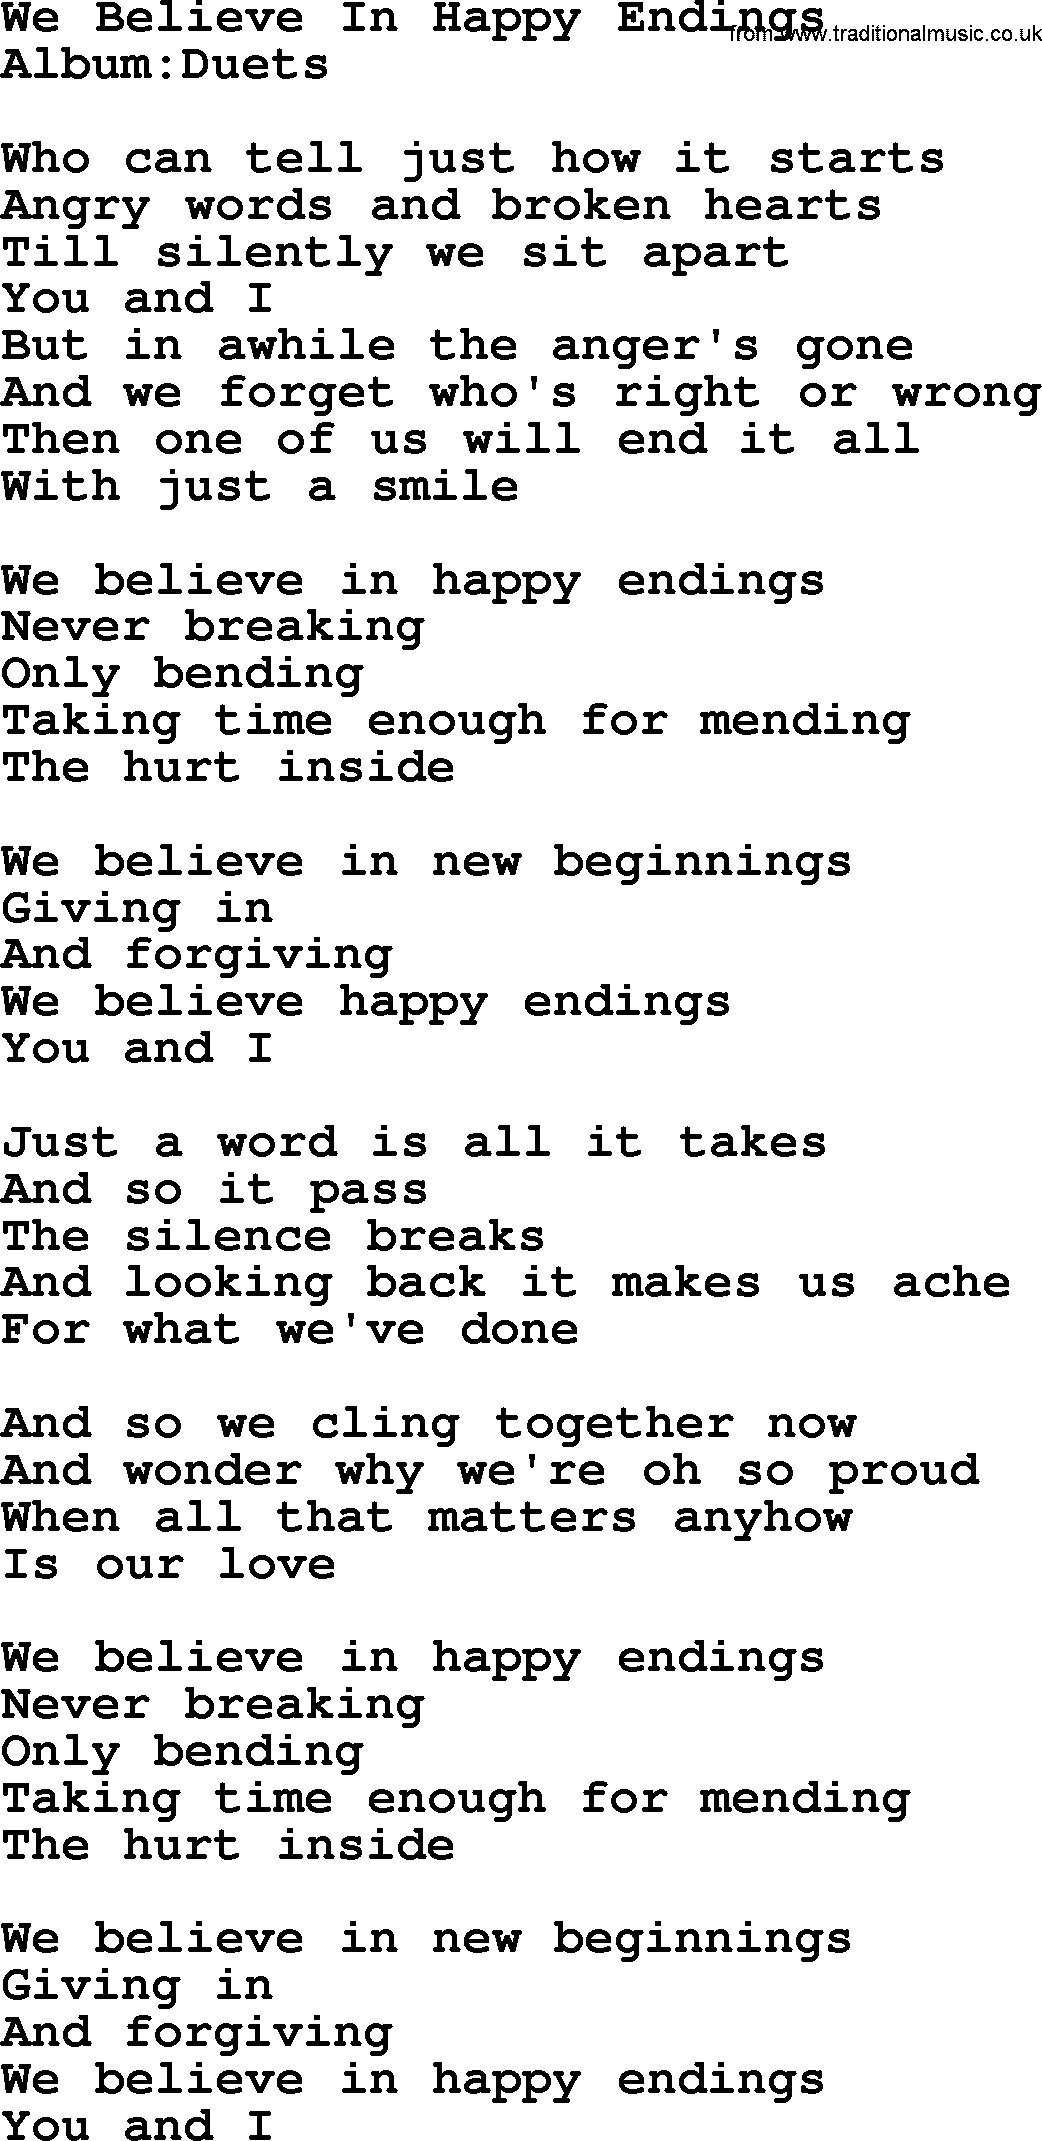 Emmylou Harris song: We Believe In Happy Endings lyrics